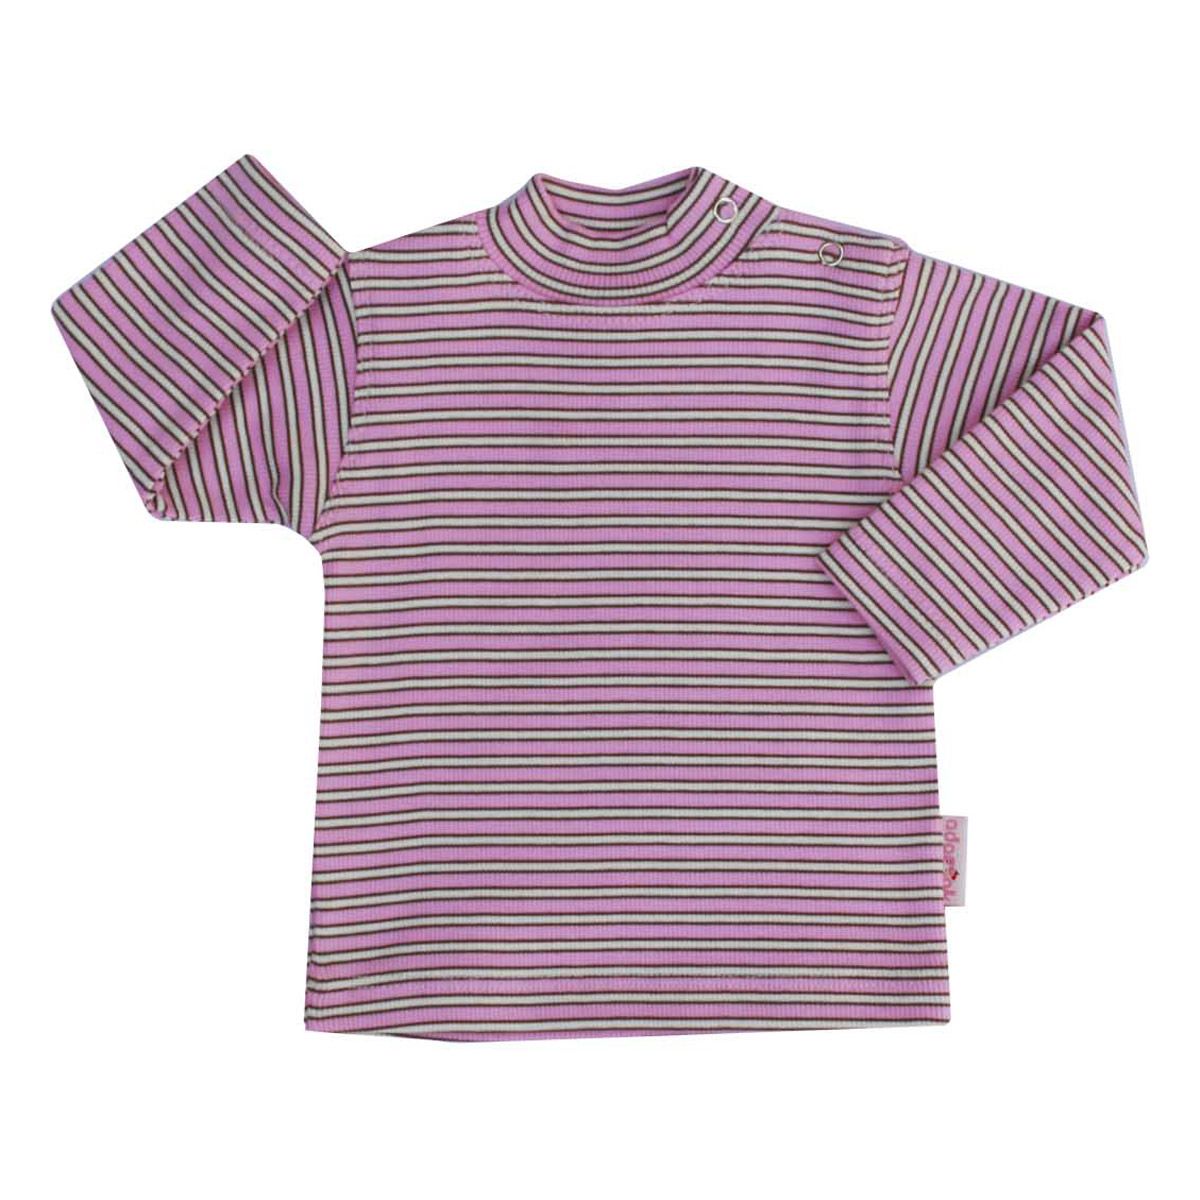 تی شرت دخترانه آدمک طرح راه راه کد 15-1432011 -  - 2